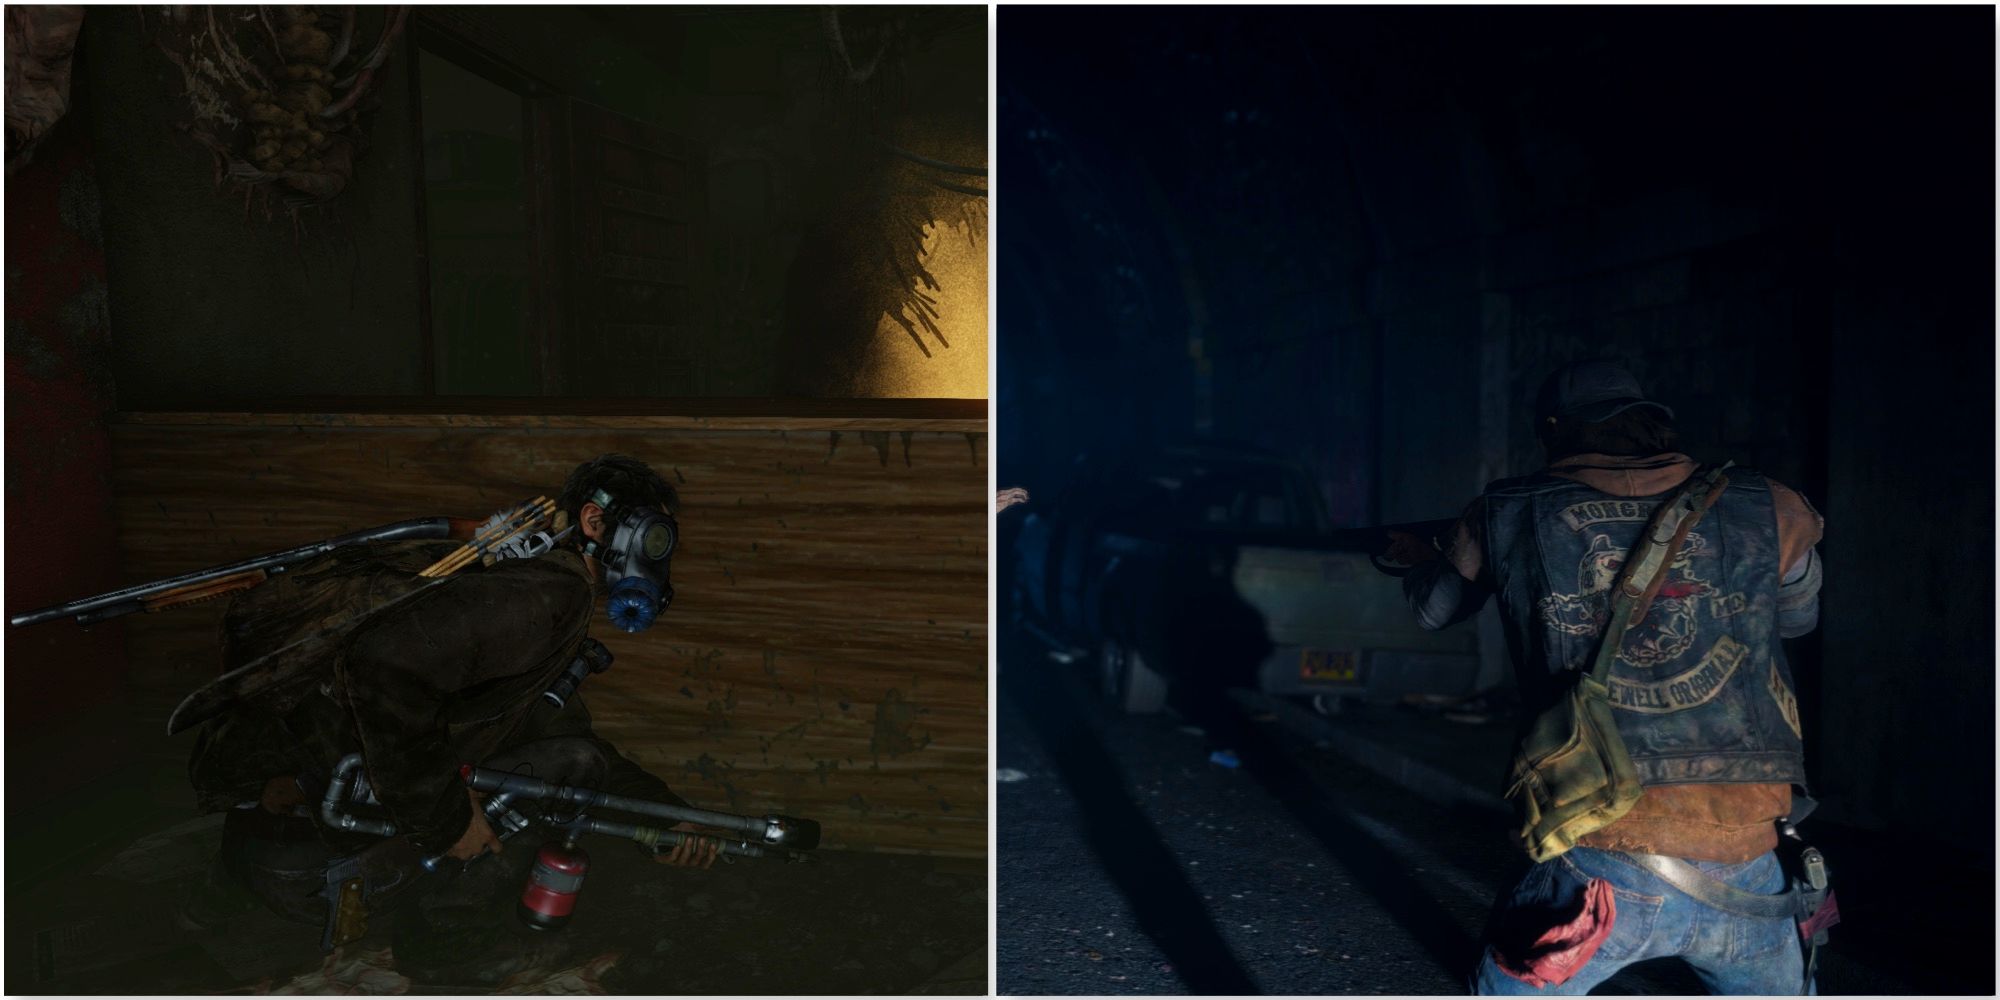 Shooting enemies in The Last of Us and Shooting enemies in Days Gone